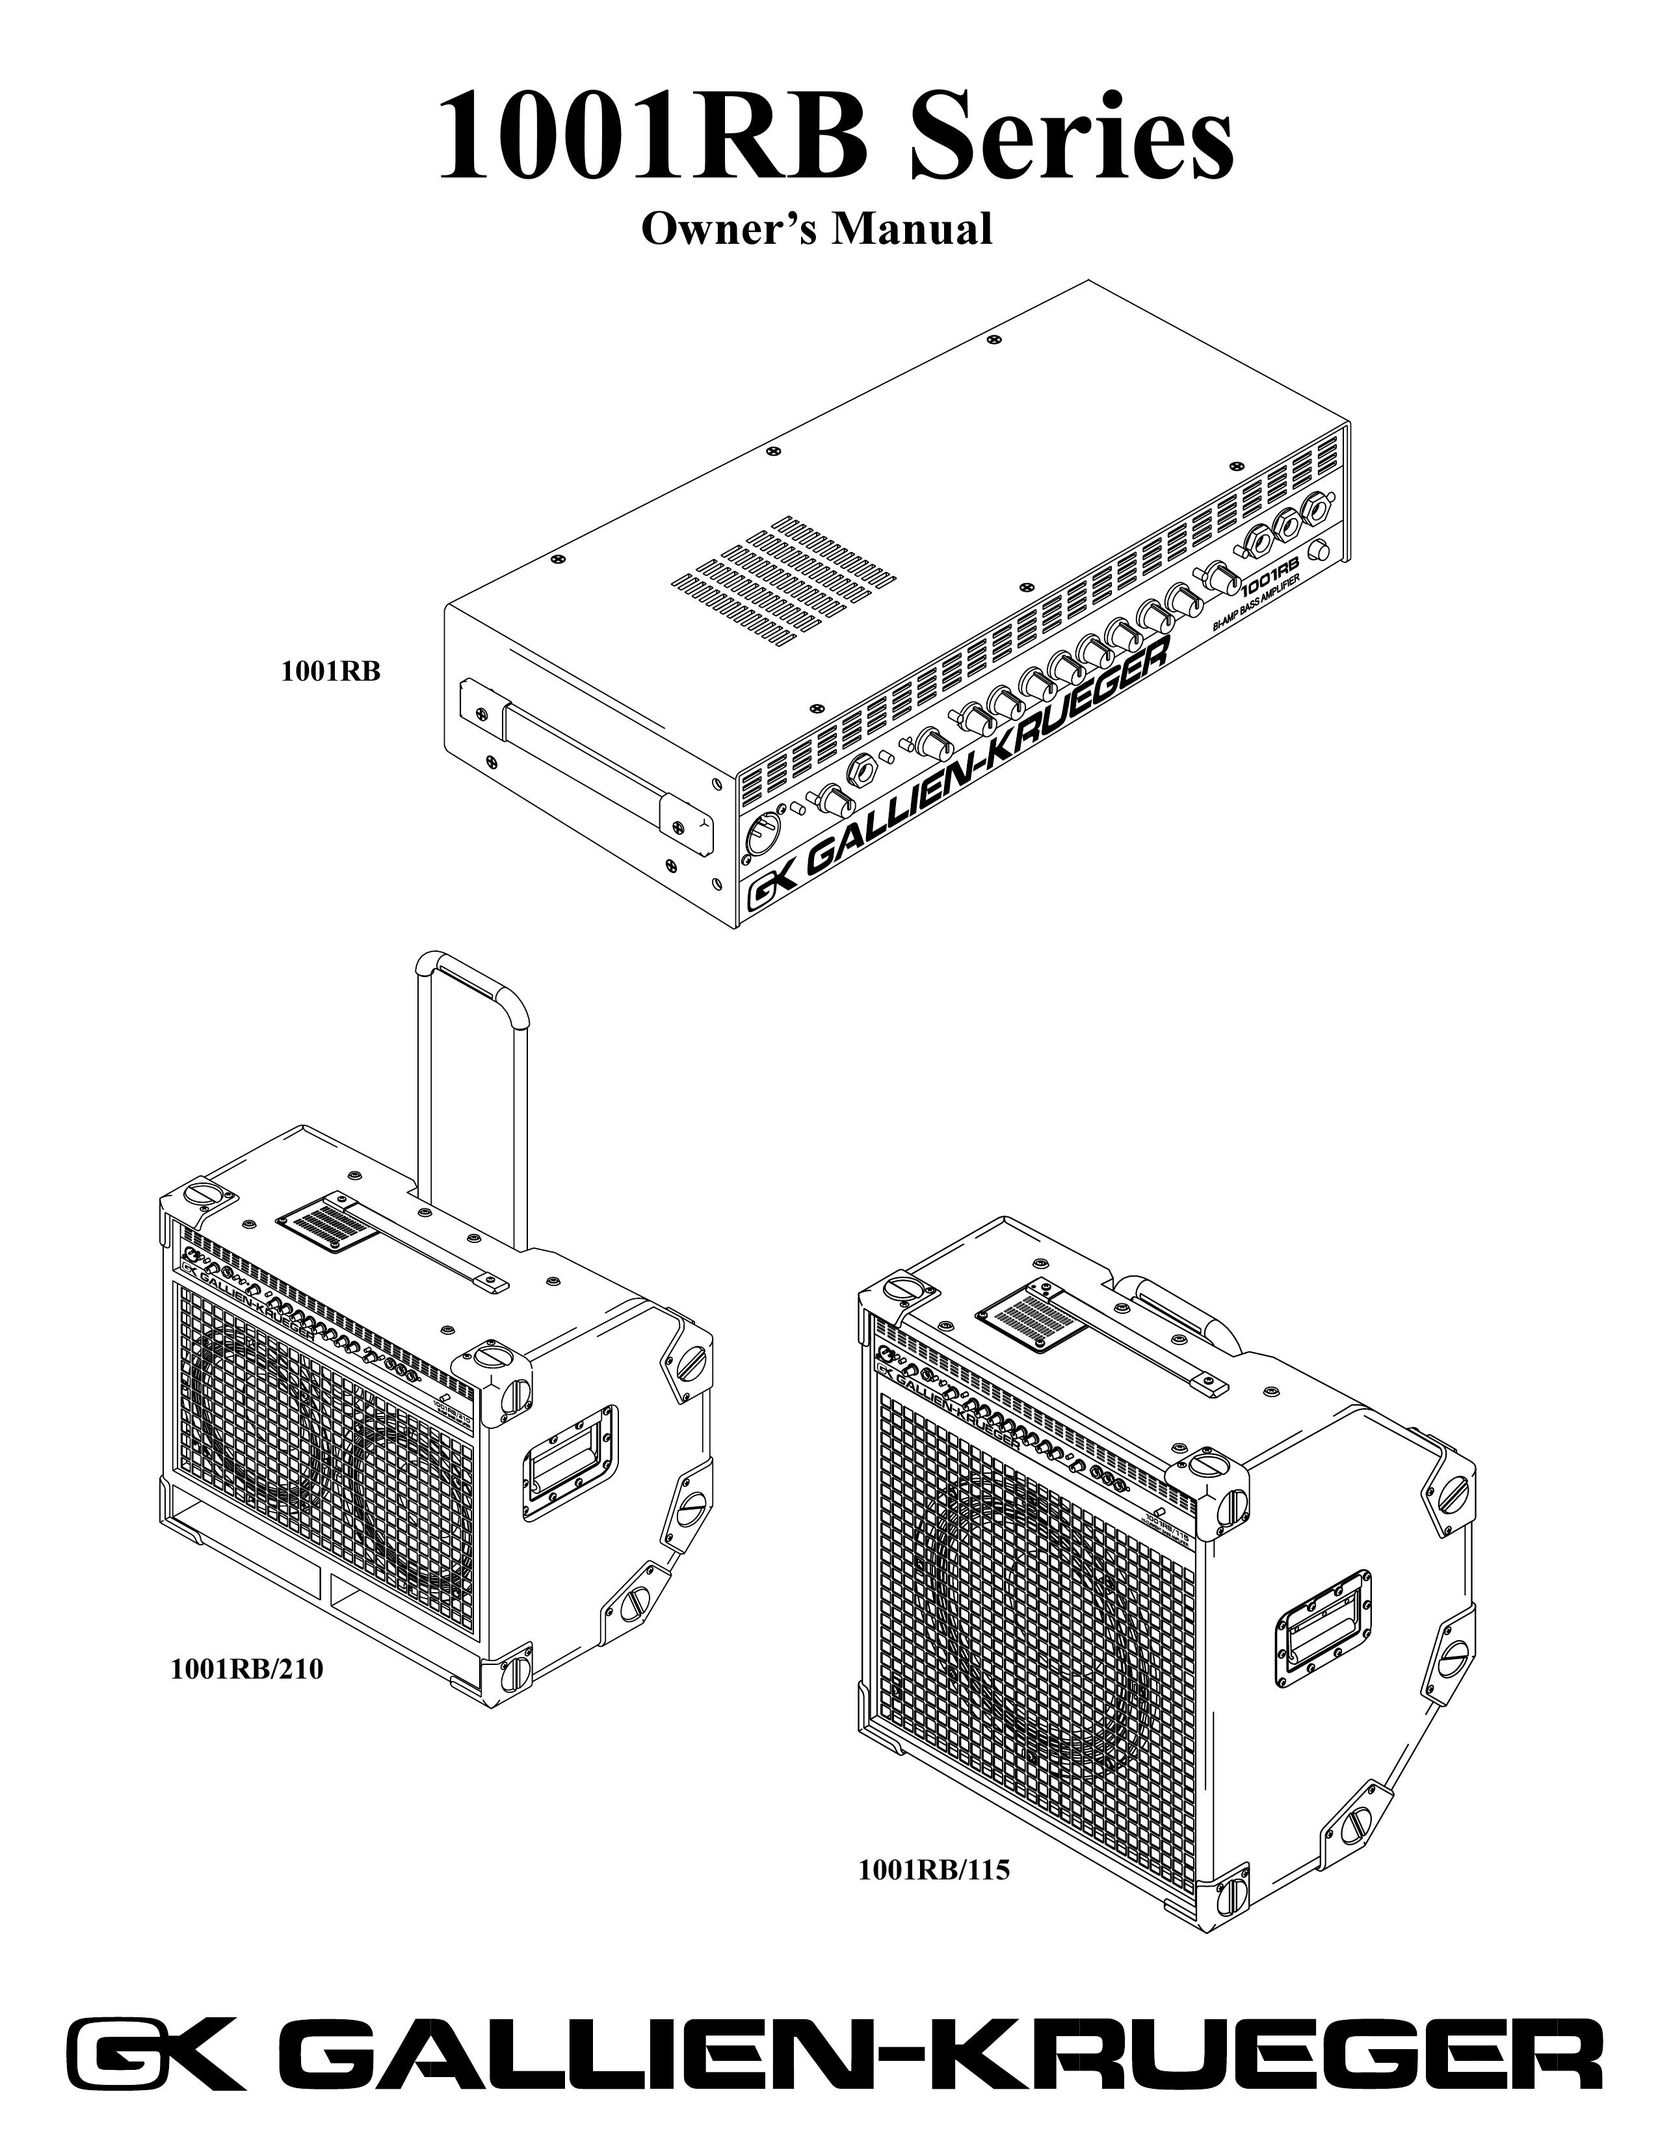 RBH Sound 1001RB/115 Speaker User Manual